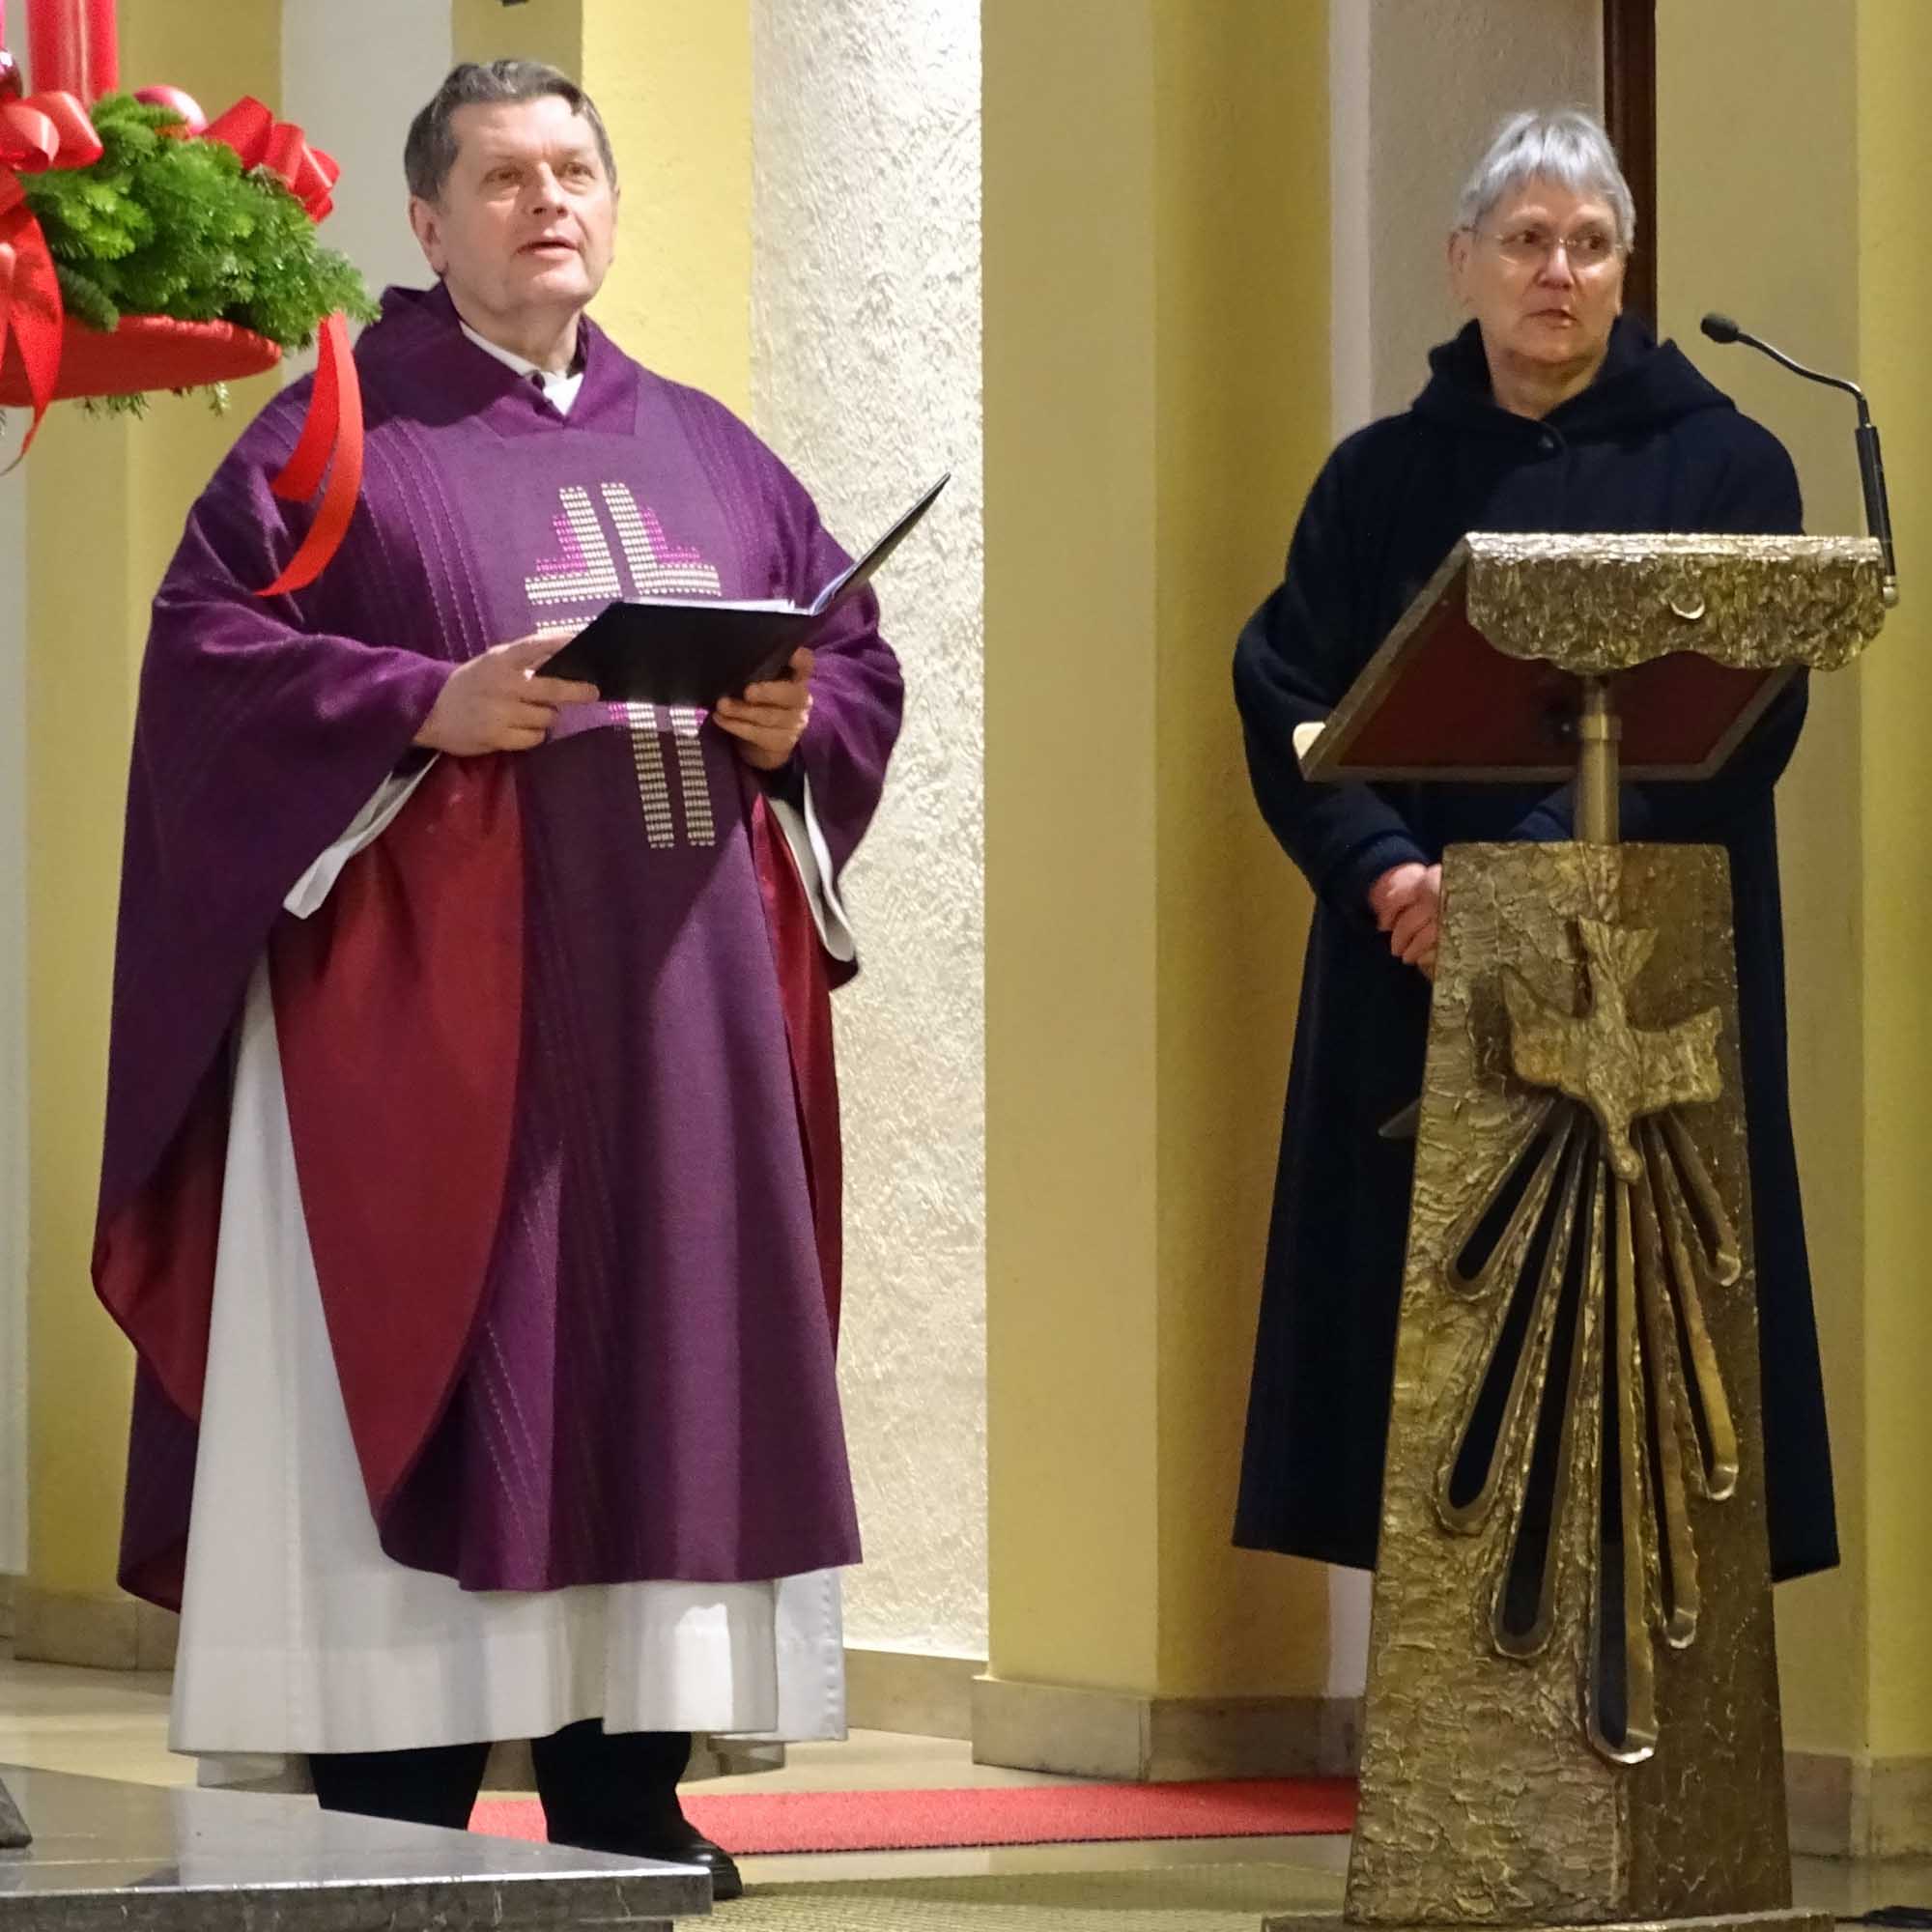 Groß-Gerau, 11. Dezember 2022: Pfarrer Joachim Respondek dankte Irmgard Jahn für ihren langjährigen Dienst. (c) Markus Schenk